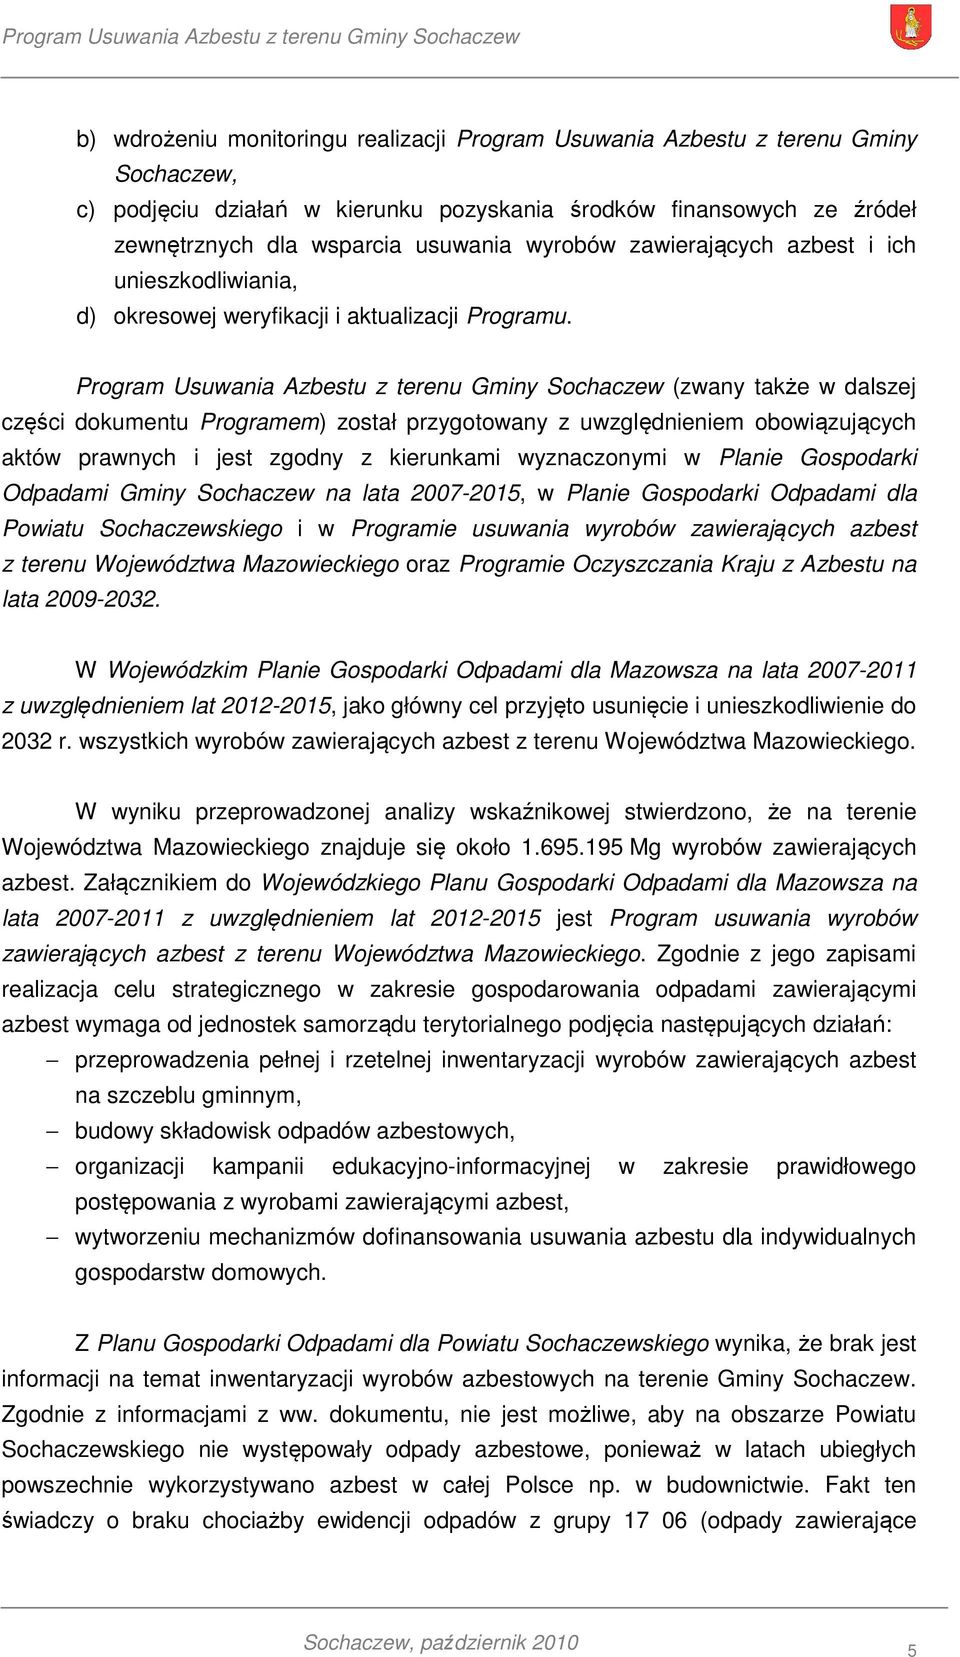 Program Usuwania Azbestu z terenu Gminy Sochaczew (zwany także w dalszej części dokumentu Programem) został przygotowany z uwzględnieniem obowiązujących aktów prawnych i jest zgodny z kierunkami